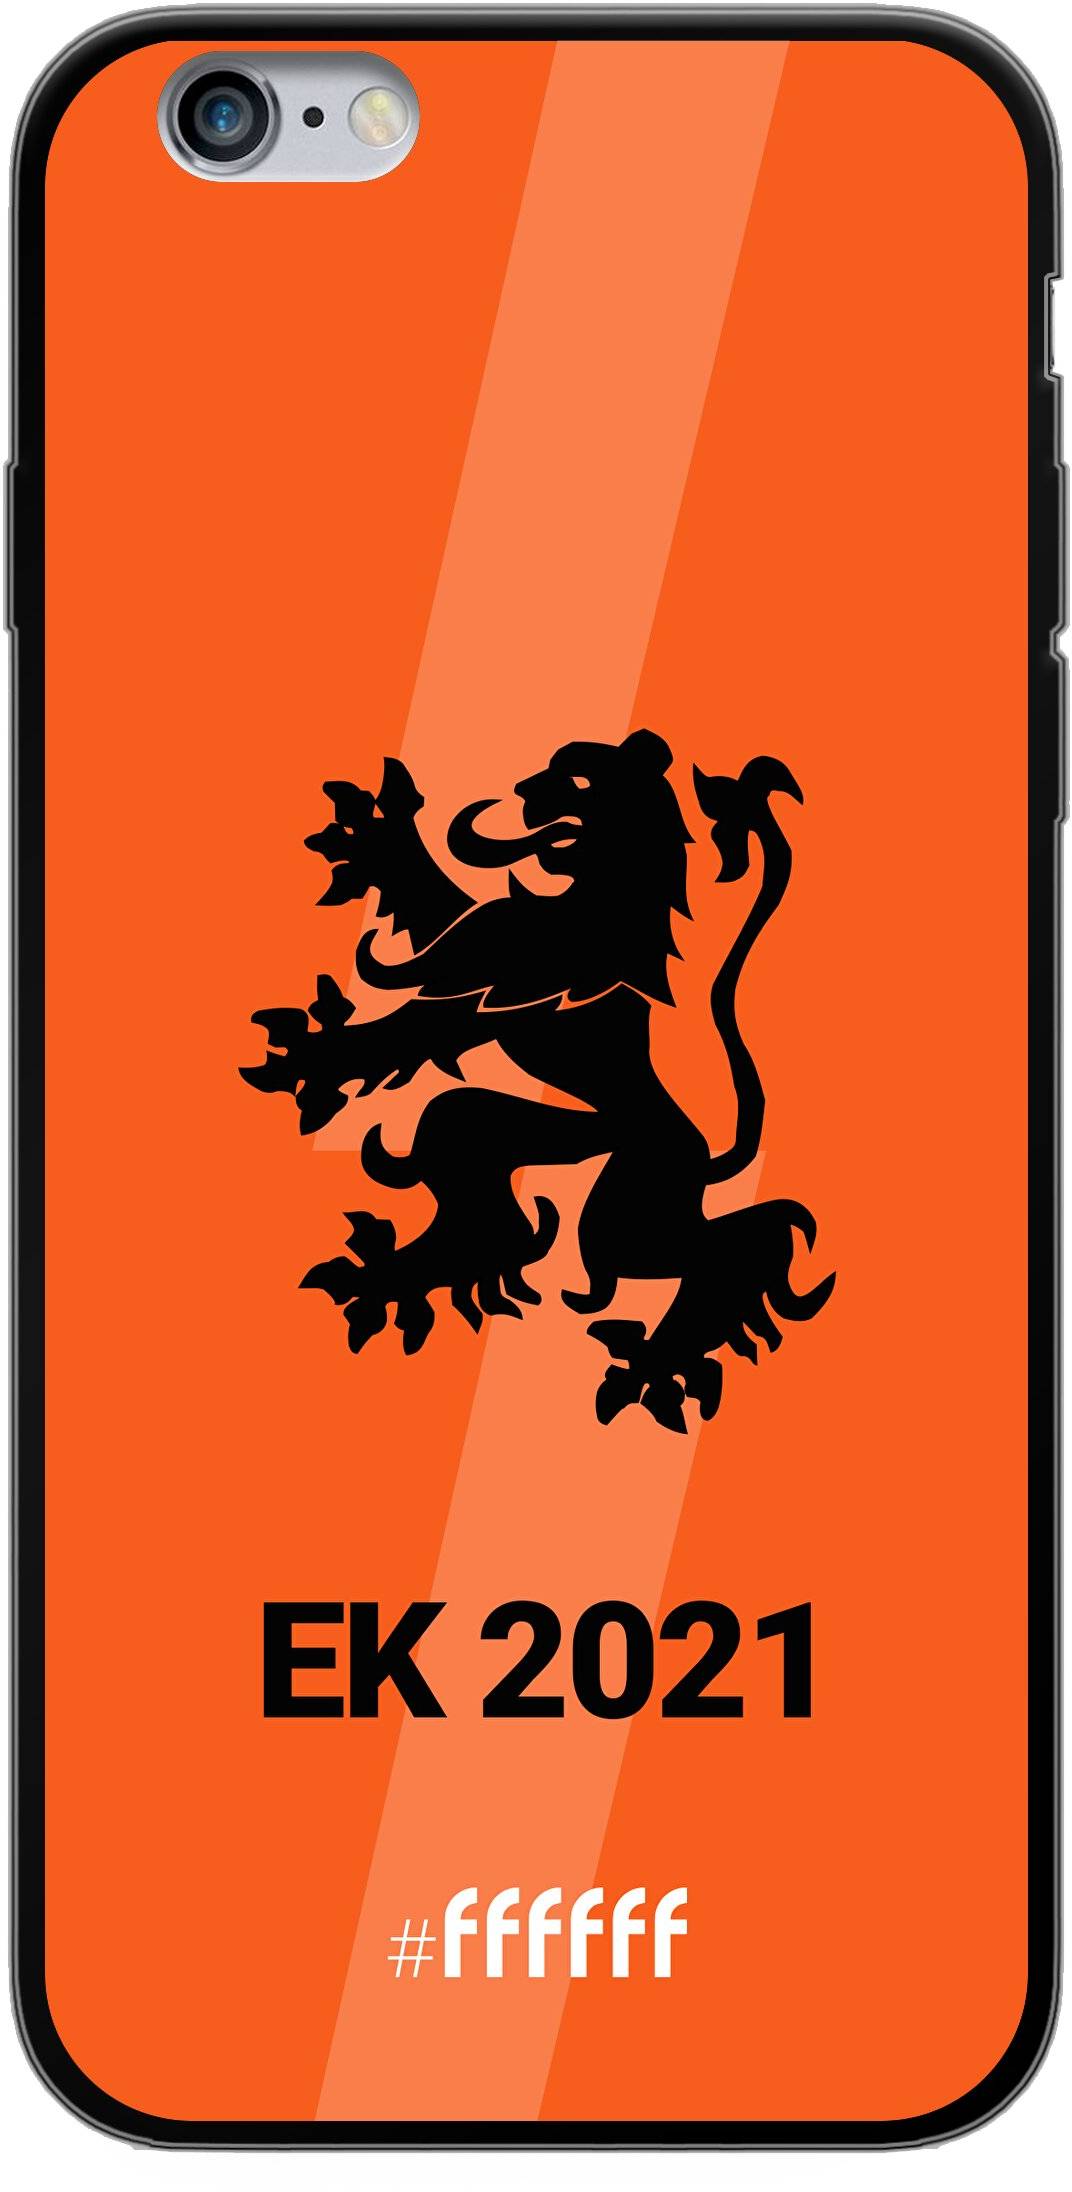 Nederlands Elftal - EK 2021 iPhone 6s